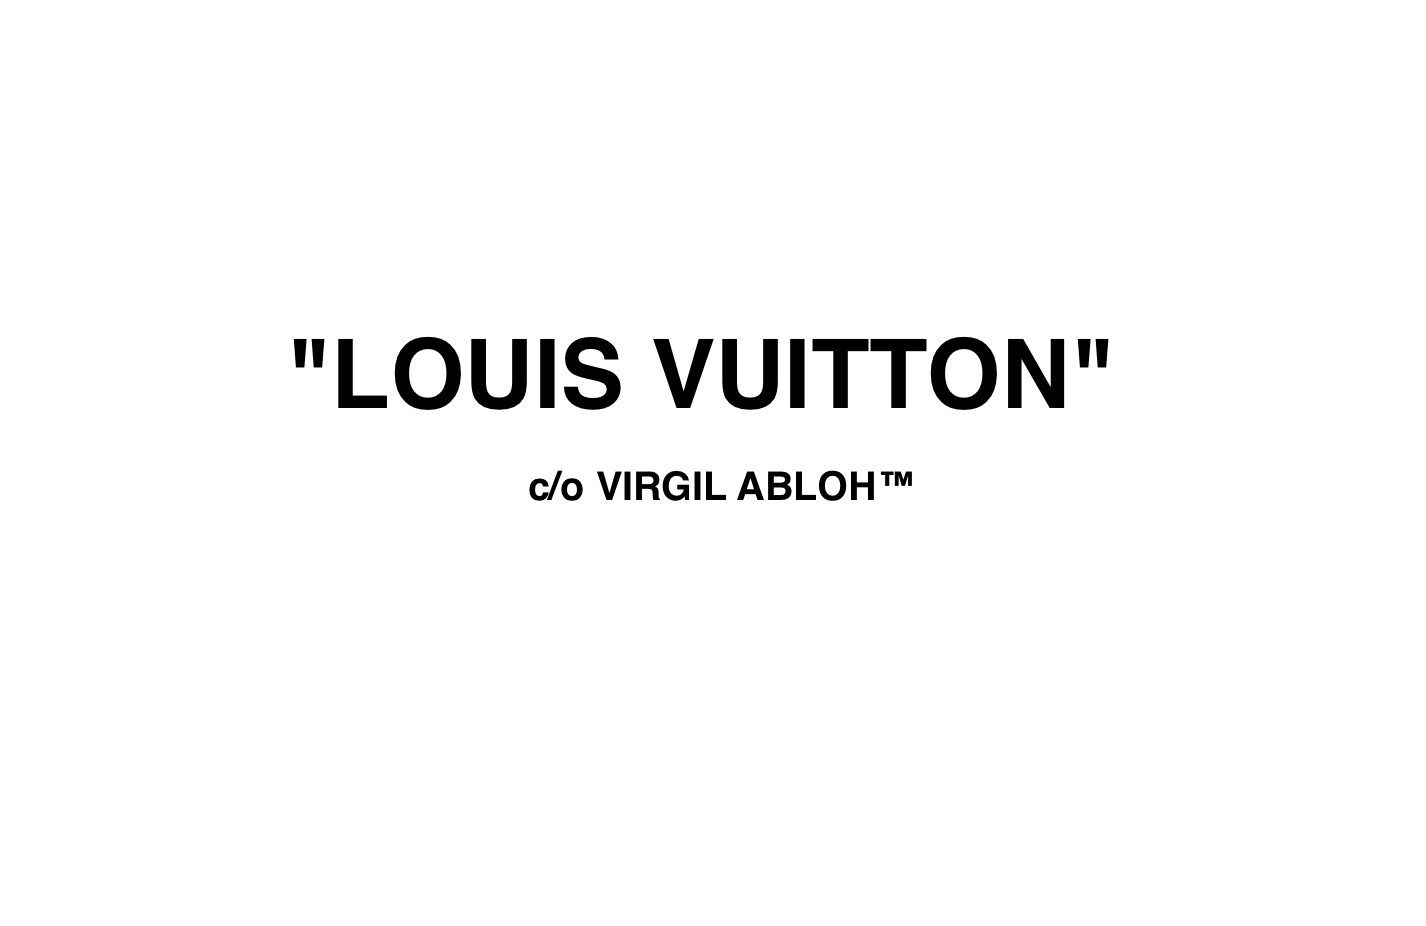 Virgil Abloh takes charge at Louis Vuitton — nina van volkinburg